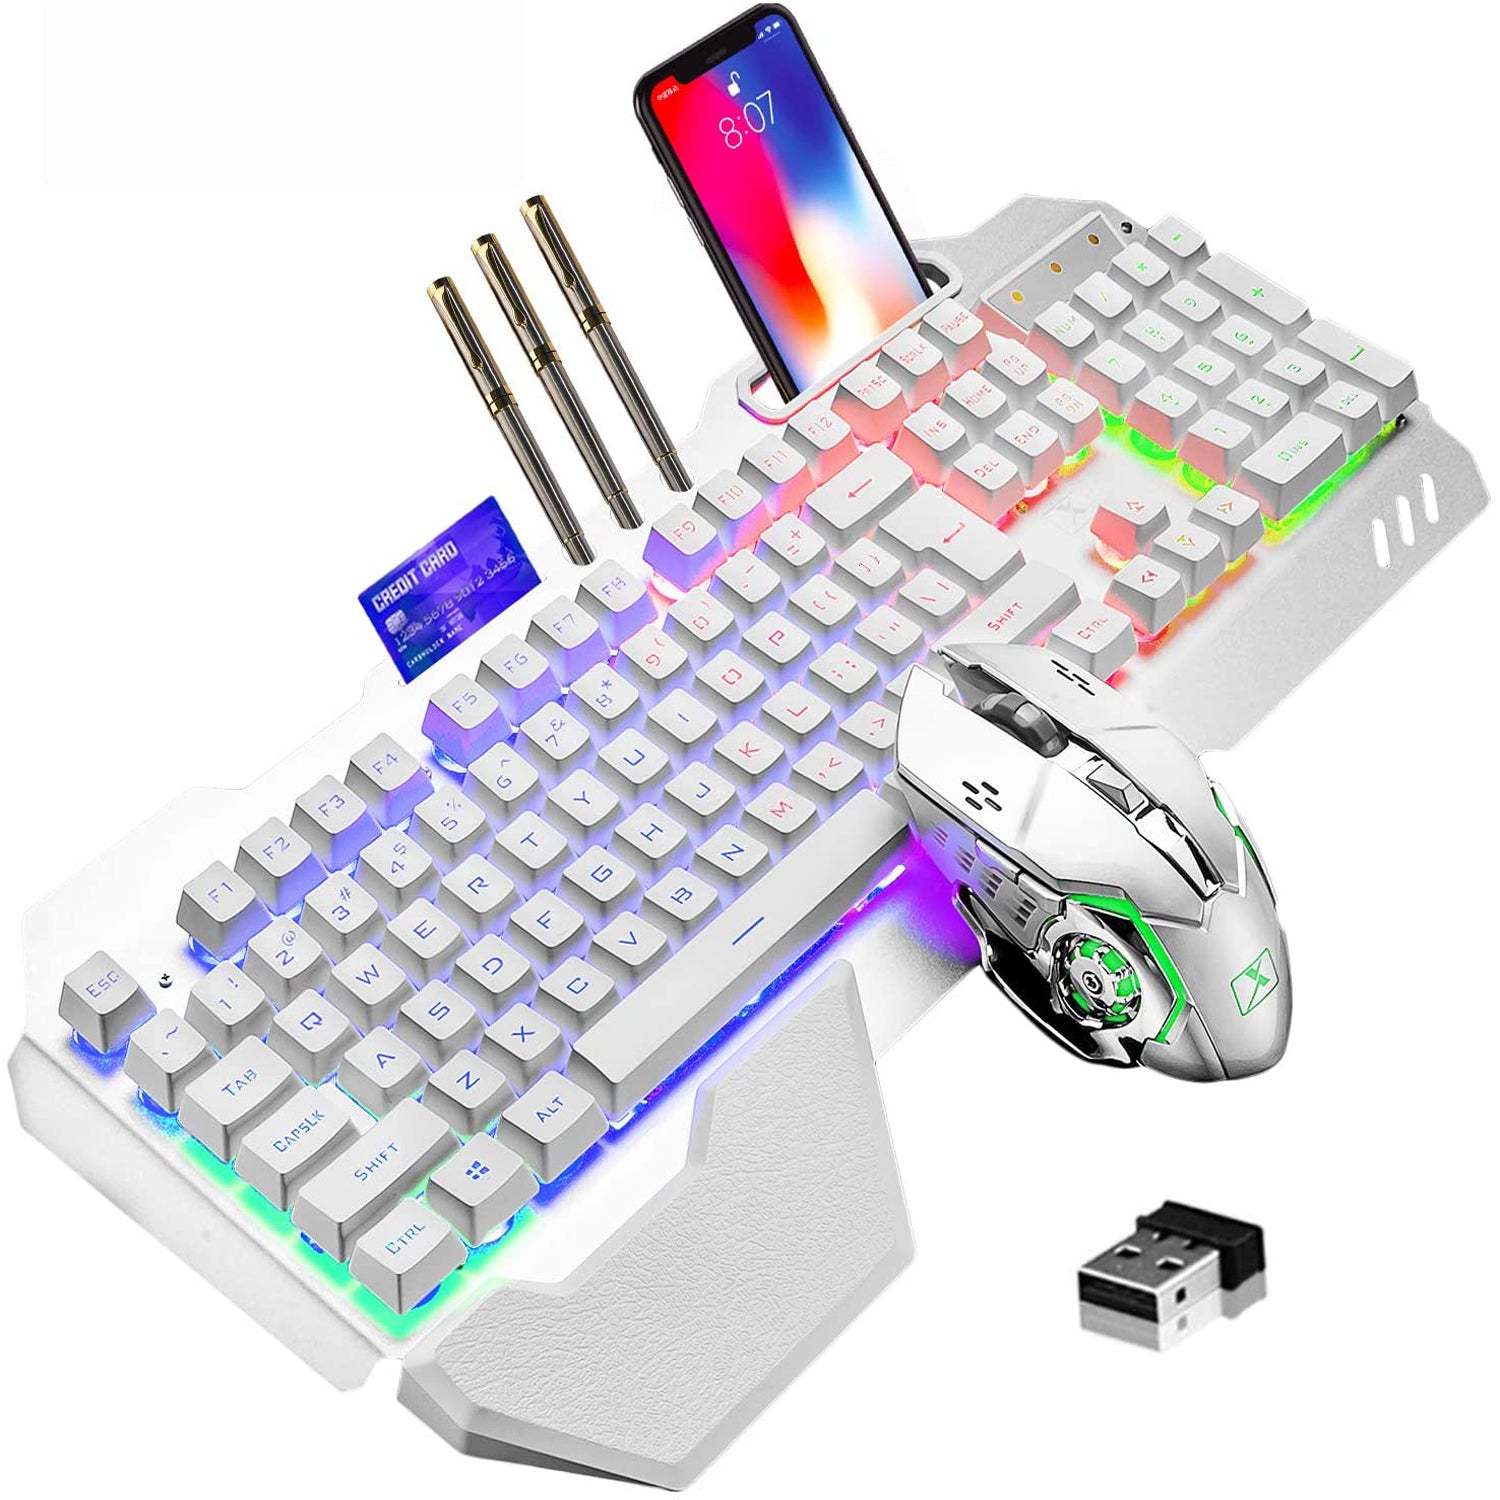 ワイヤレスゲーミングキーボードとマウス、3800mAhバッテリーメタルパネルを備えたレインボーバックライト付き充電式キーボードマウス、取り外し可能なハンドレストメカニカルフィールキーボード、PCゲーマー向けの7色ゲーミングミュートマウス